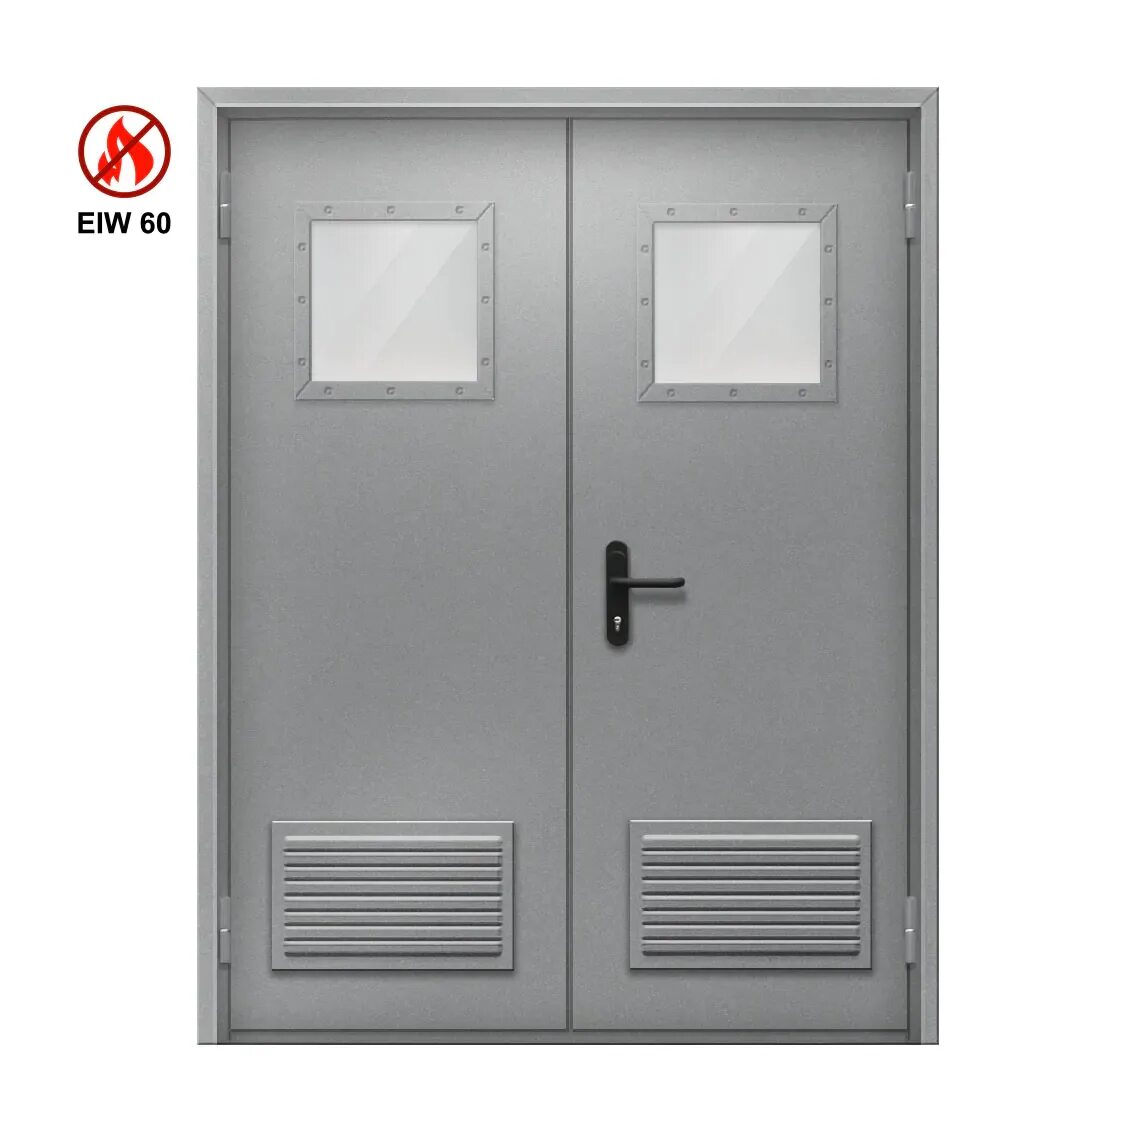 Противопожарная алюминиевая дверь EIW 60. EIW 60 противопожарные двери. Входные двери eiw60 противопожарные. Дверь противопожарная алюминиевая ei 30 остекленная. Противопожарные двери eiw 60